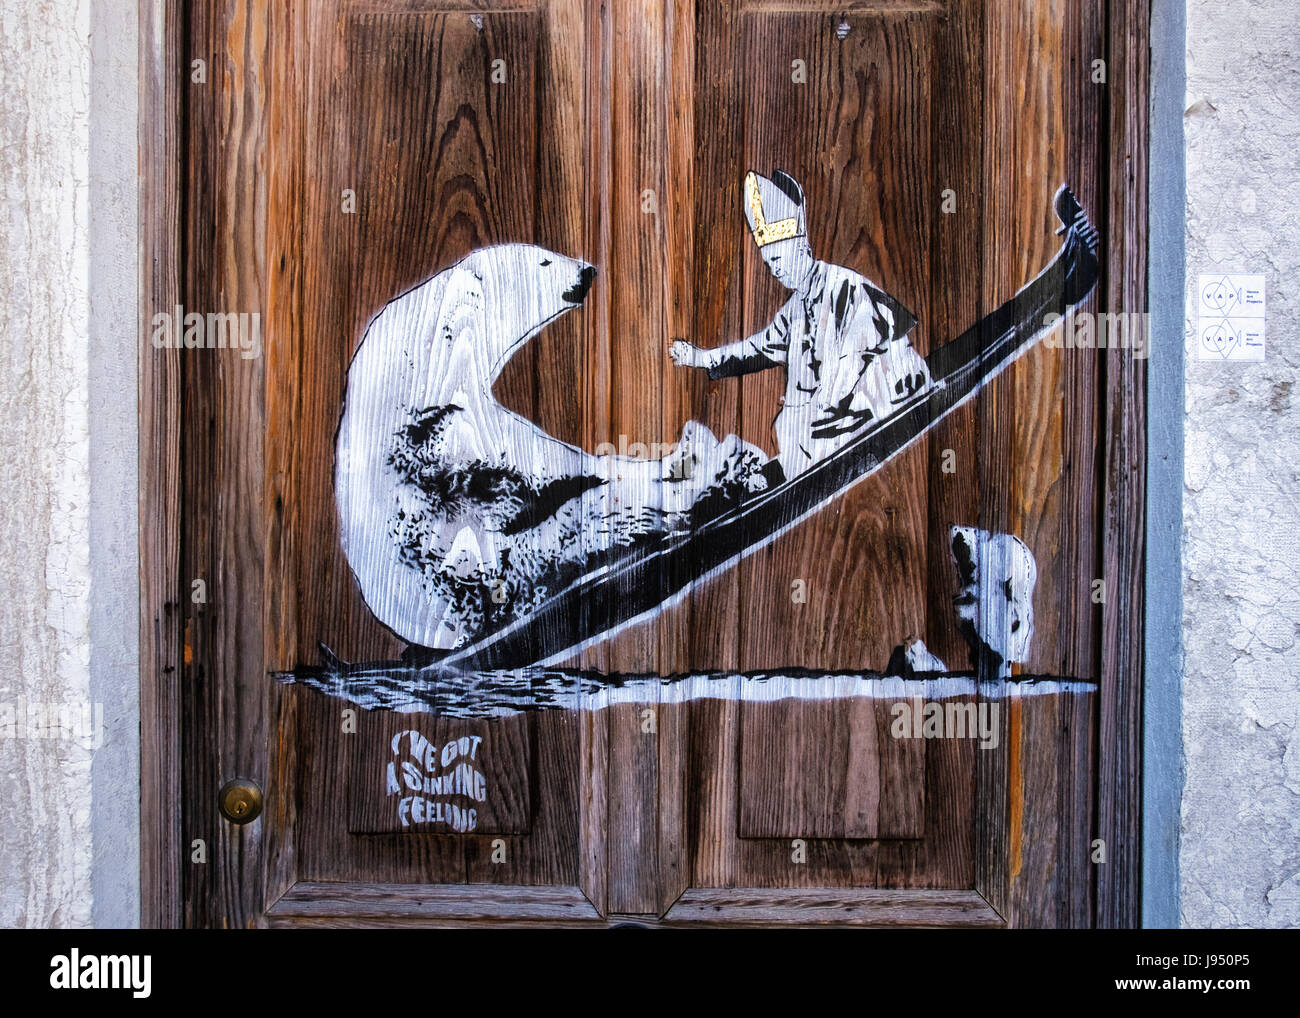 L'Italie, Venise, CastelloAmusing street art sur bois patiné porte de maison vénitienne, le Pape et l'ours en bateau.J'ai un sentiment de descente Banque D'Images